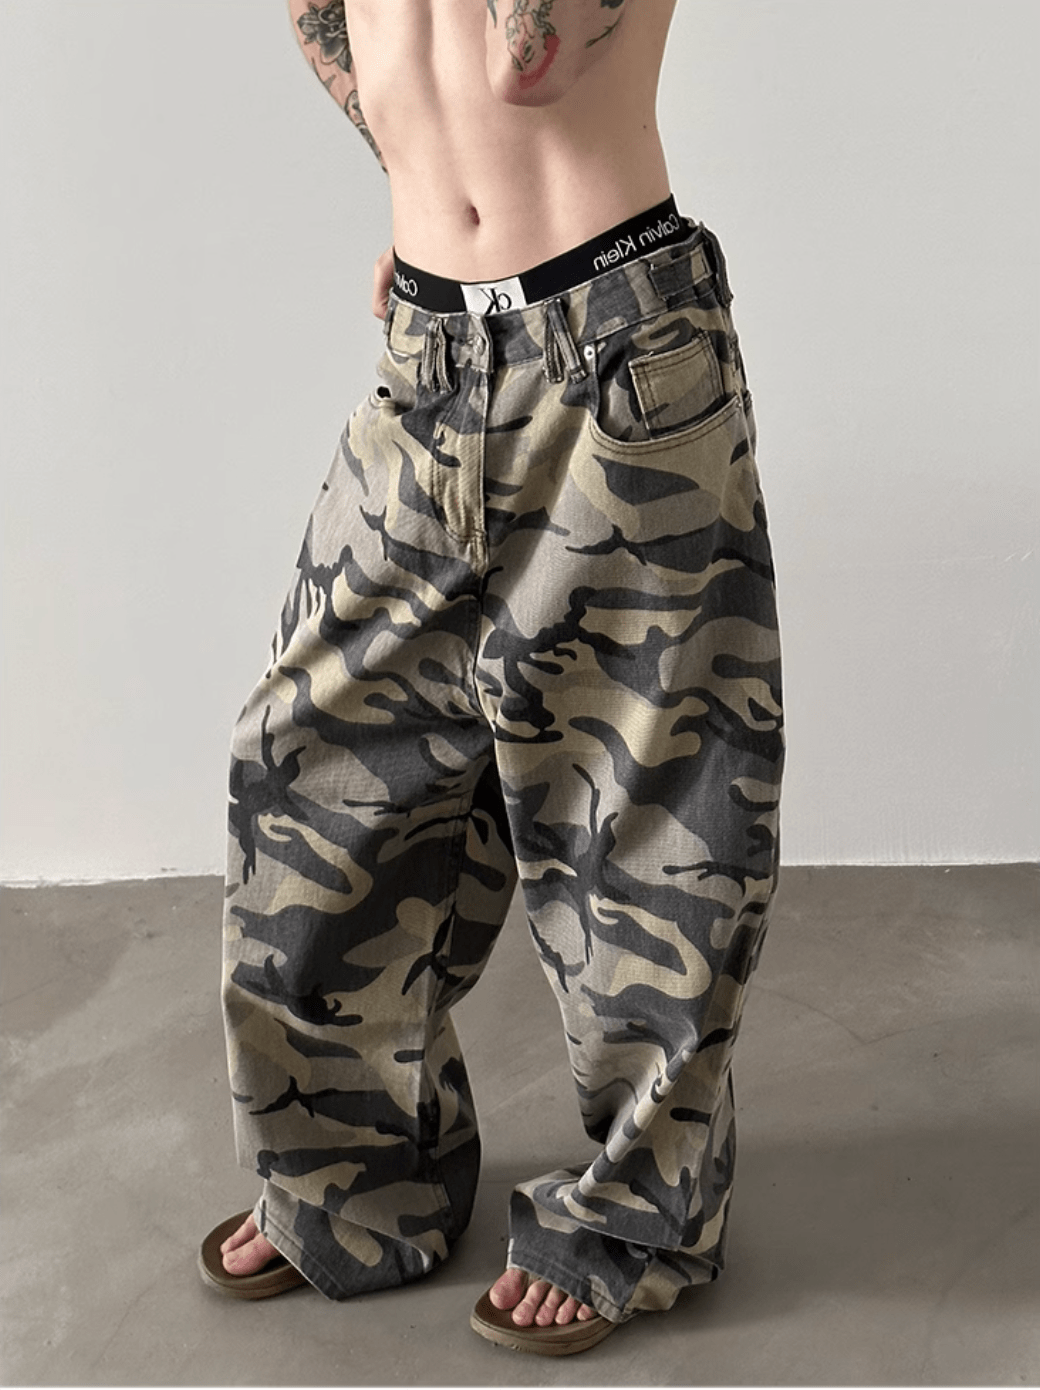 [GENESISBOY] Camouflage Pants na1218